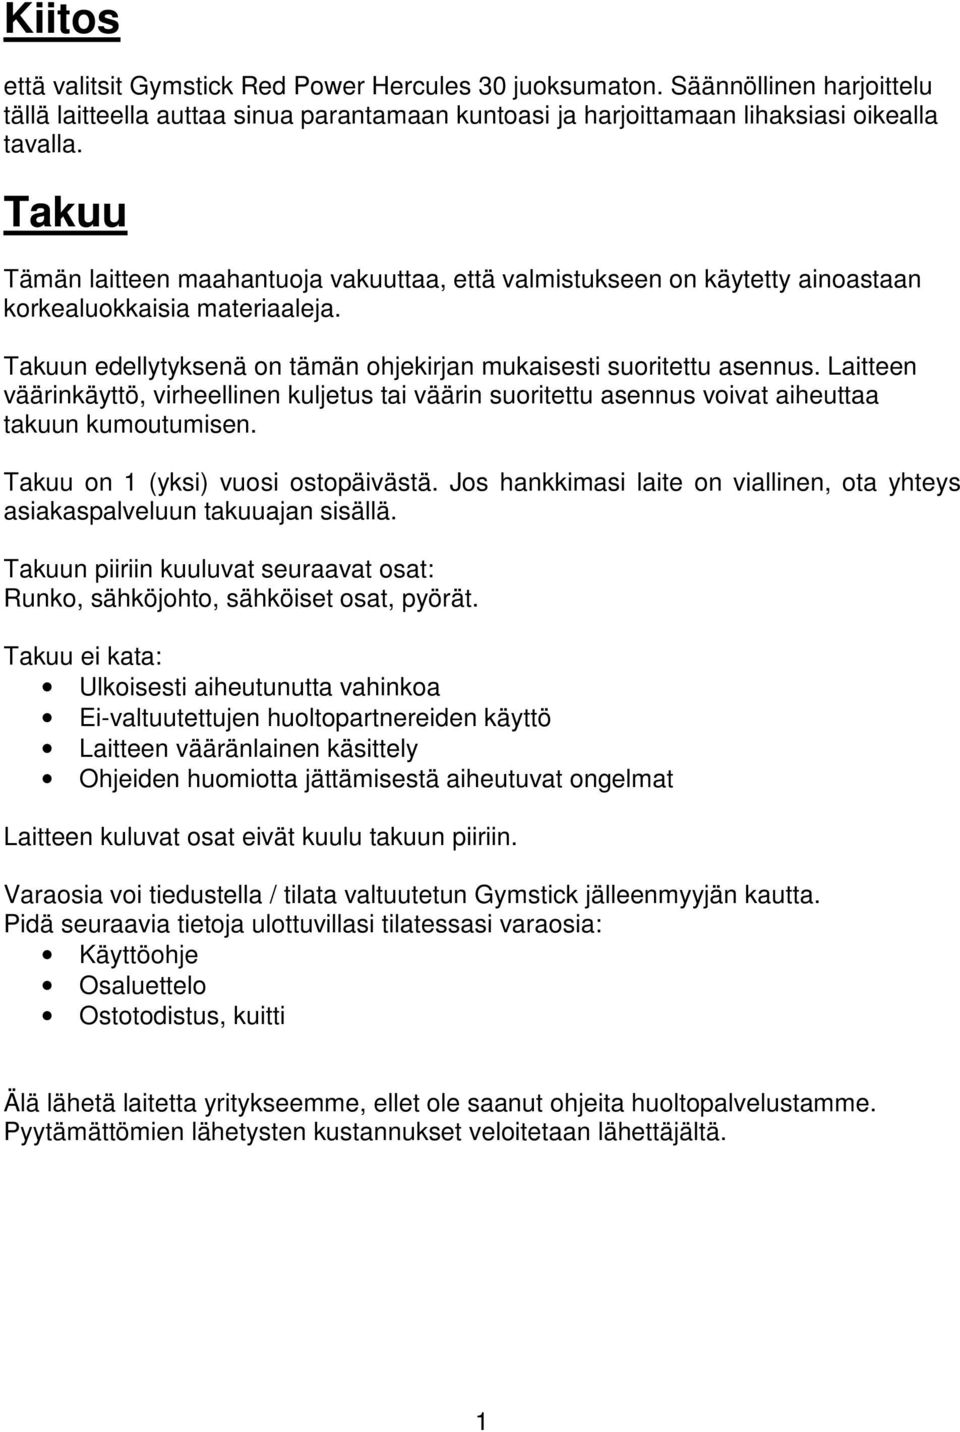 JUOKSUMATON käyttöopas HERCULES 30 - PDF Free Download